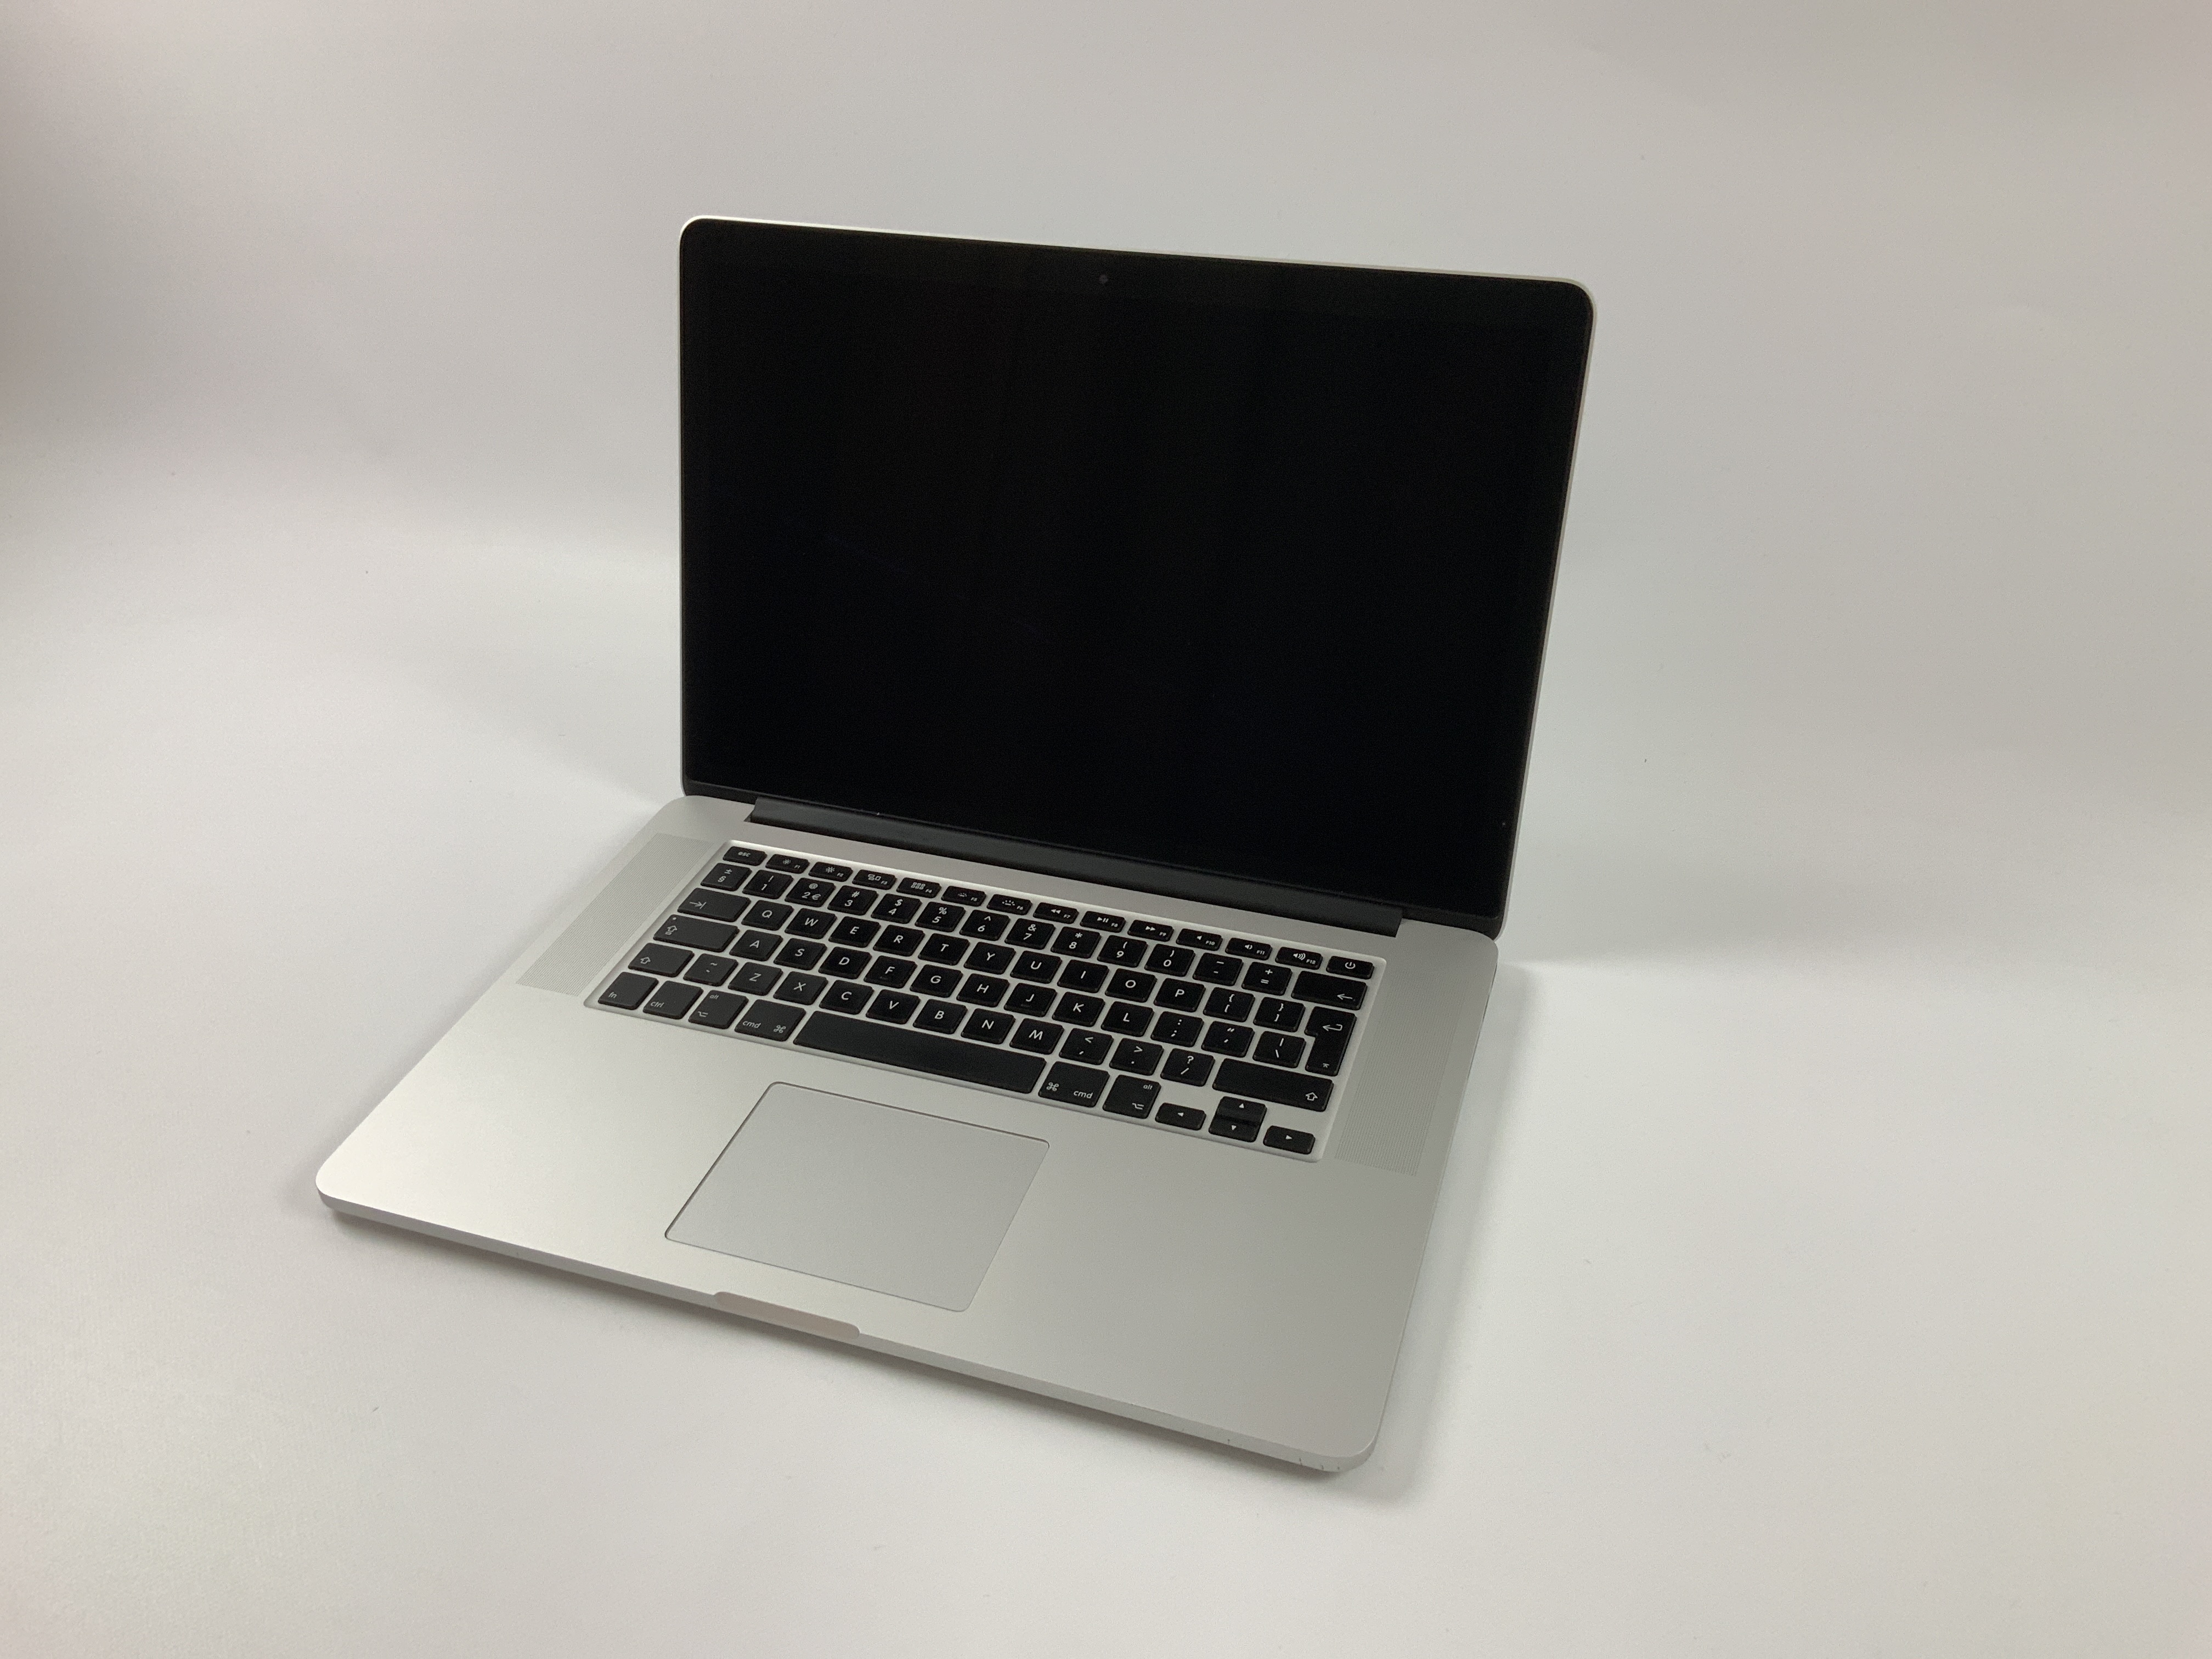 MacBook Pro Retina 15" Mid 2015 (Intel Quad-Core i7 2.5 GHz 16 GB RAM 256 GB SSD), Intel Quad-Core i7 2.5 GHz, 16 GB RAM, 256 GB SSD, immagine 1